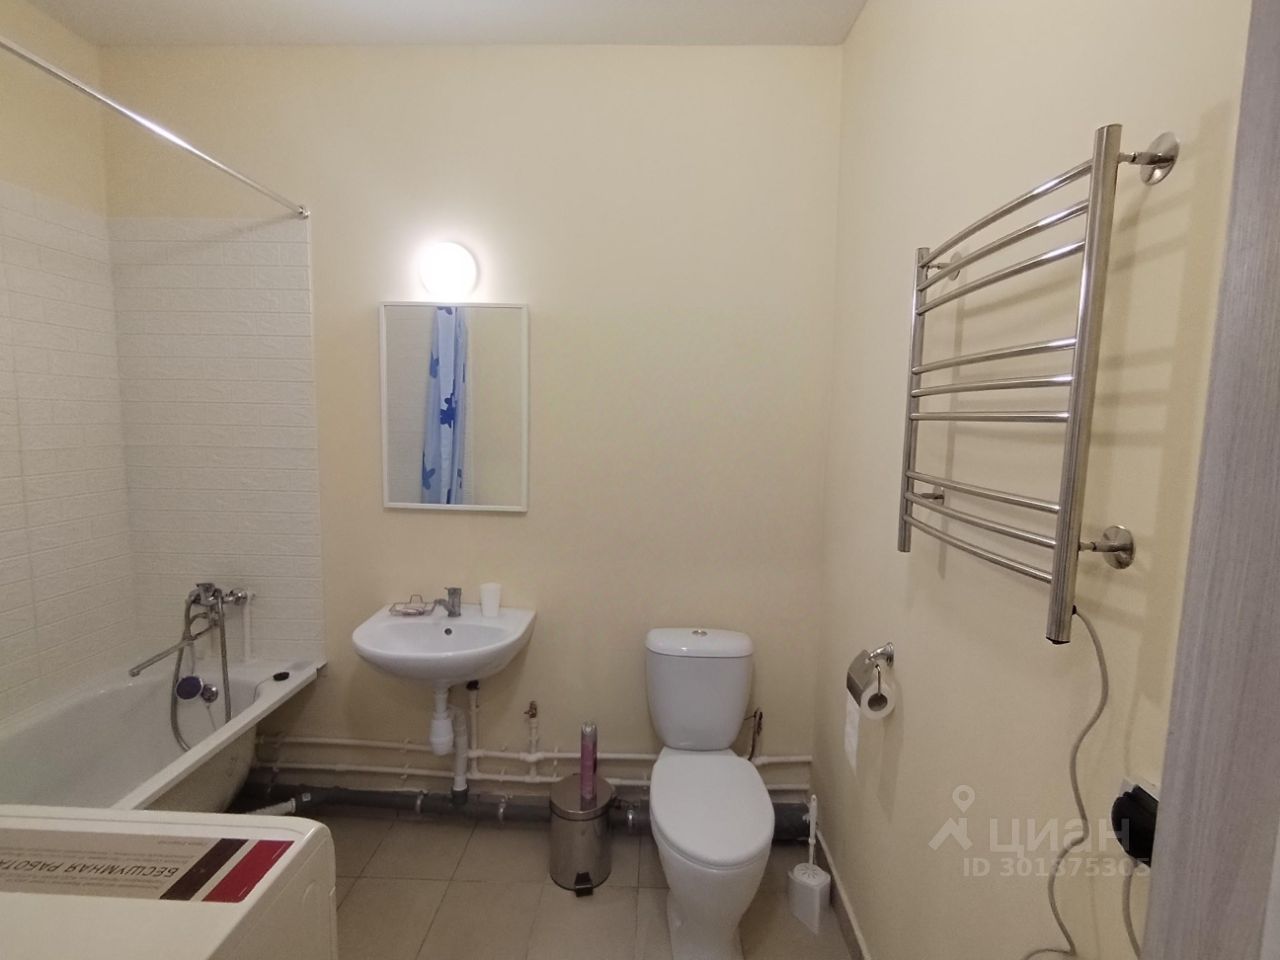 Светлая ванная комната с ванной, раковиной, унитазом и полотенцесушителем. Удобное расположение сантехники. Екатеринбург, 14 этаж.